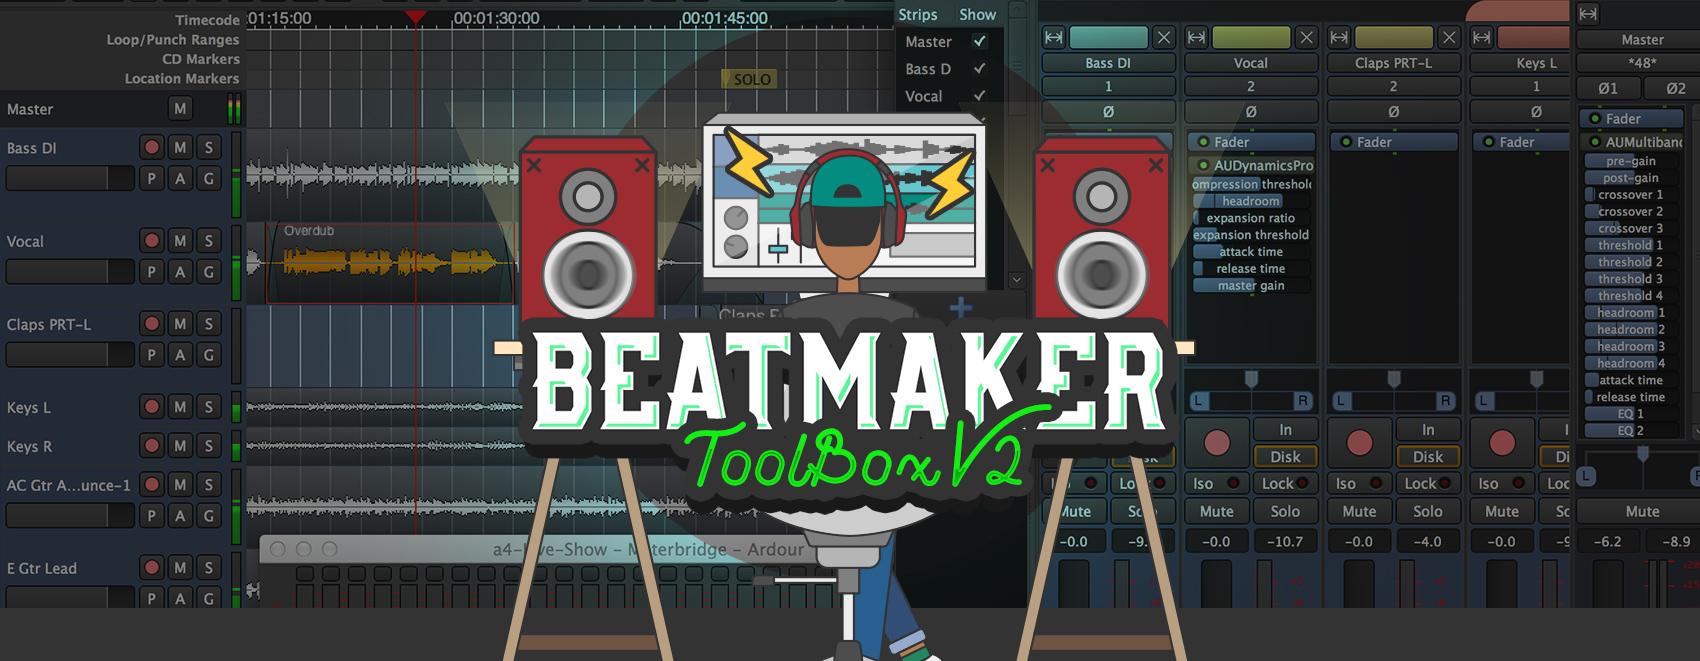 Beatmaker Toolbox V2 Mega Producer Pack